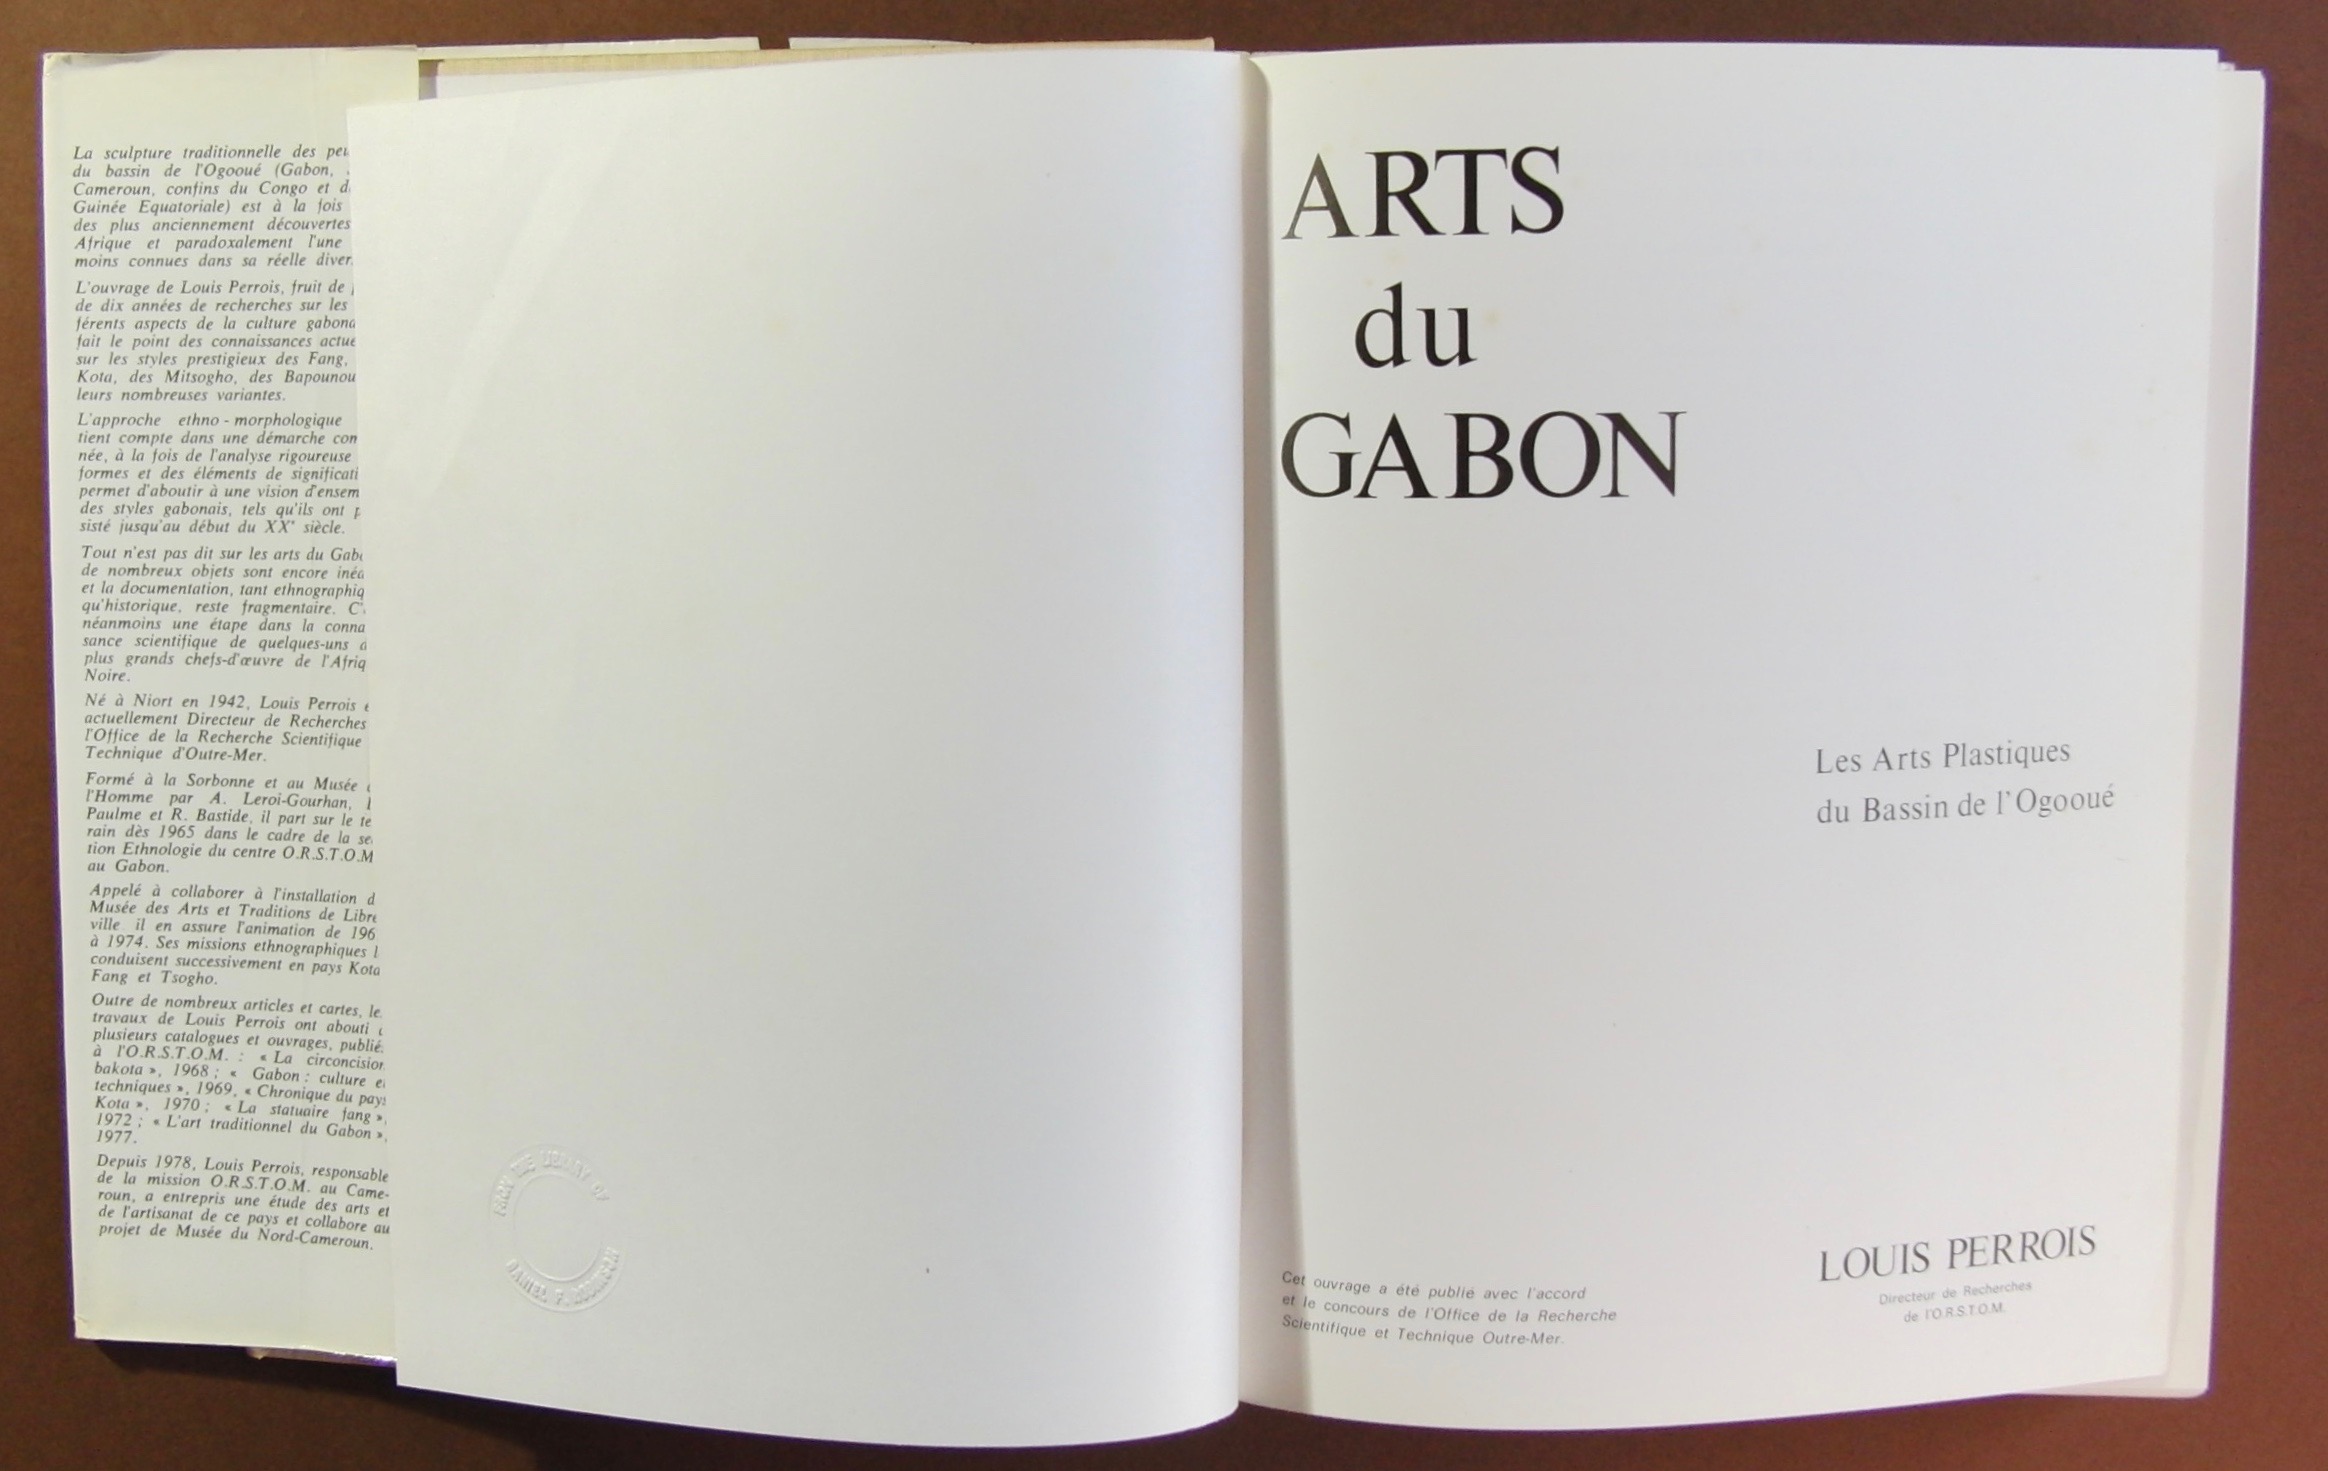 ARTS DU GABON, Les Arts Plastiques du Bassin de L'Ogooue. by PERROIS ...